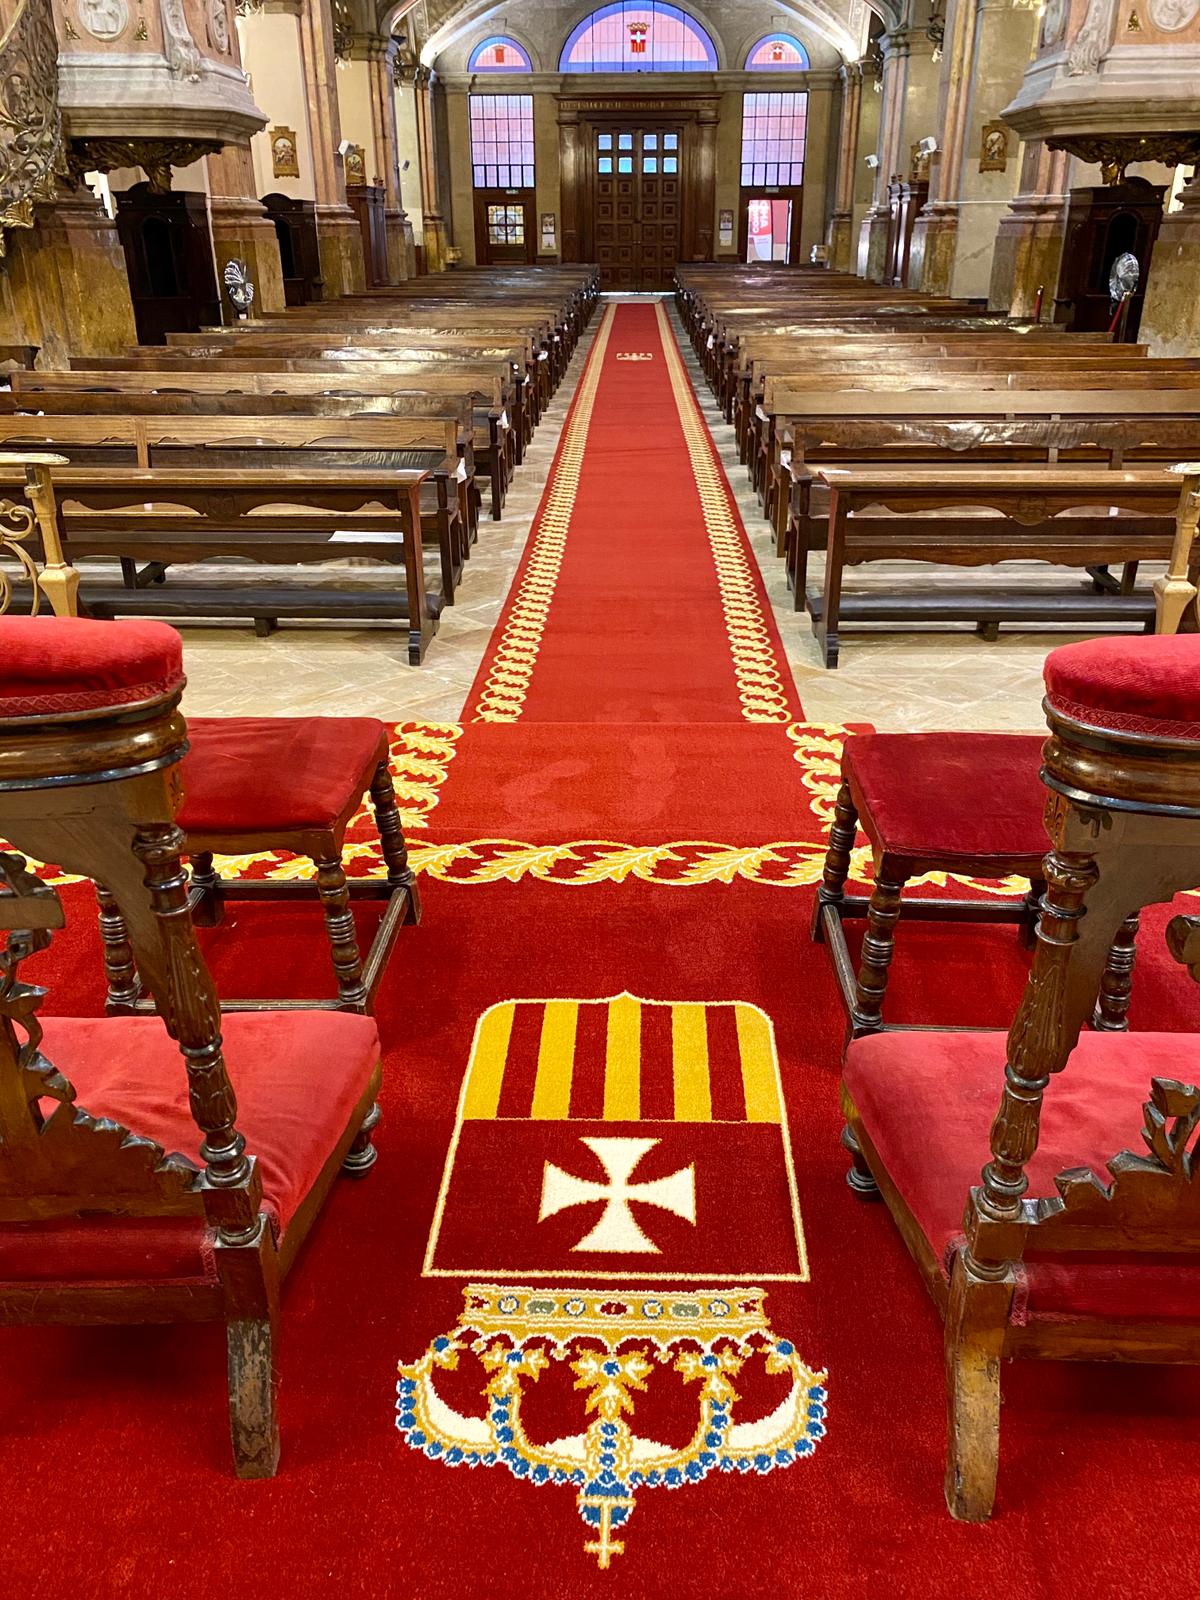 Alta calidad alfombra para la iglesia para áreas de mucho tráfico:  Alibaba.com